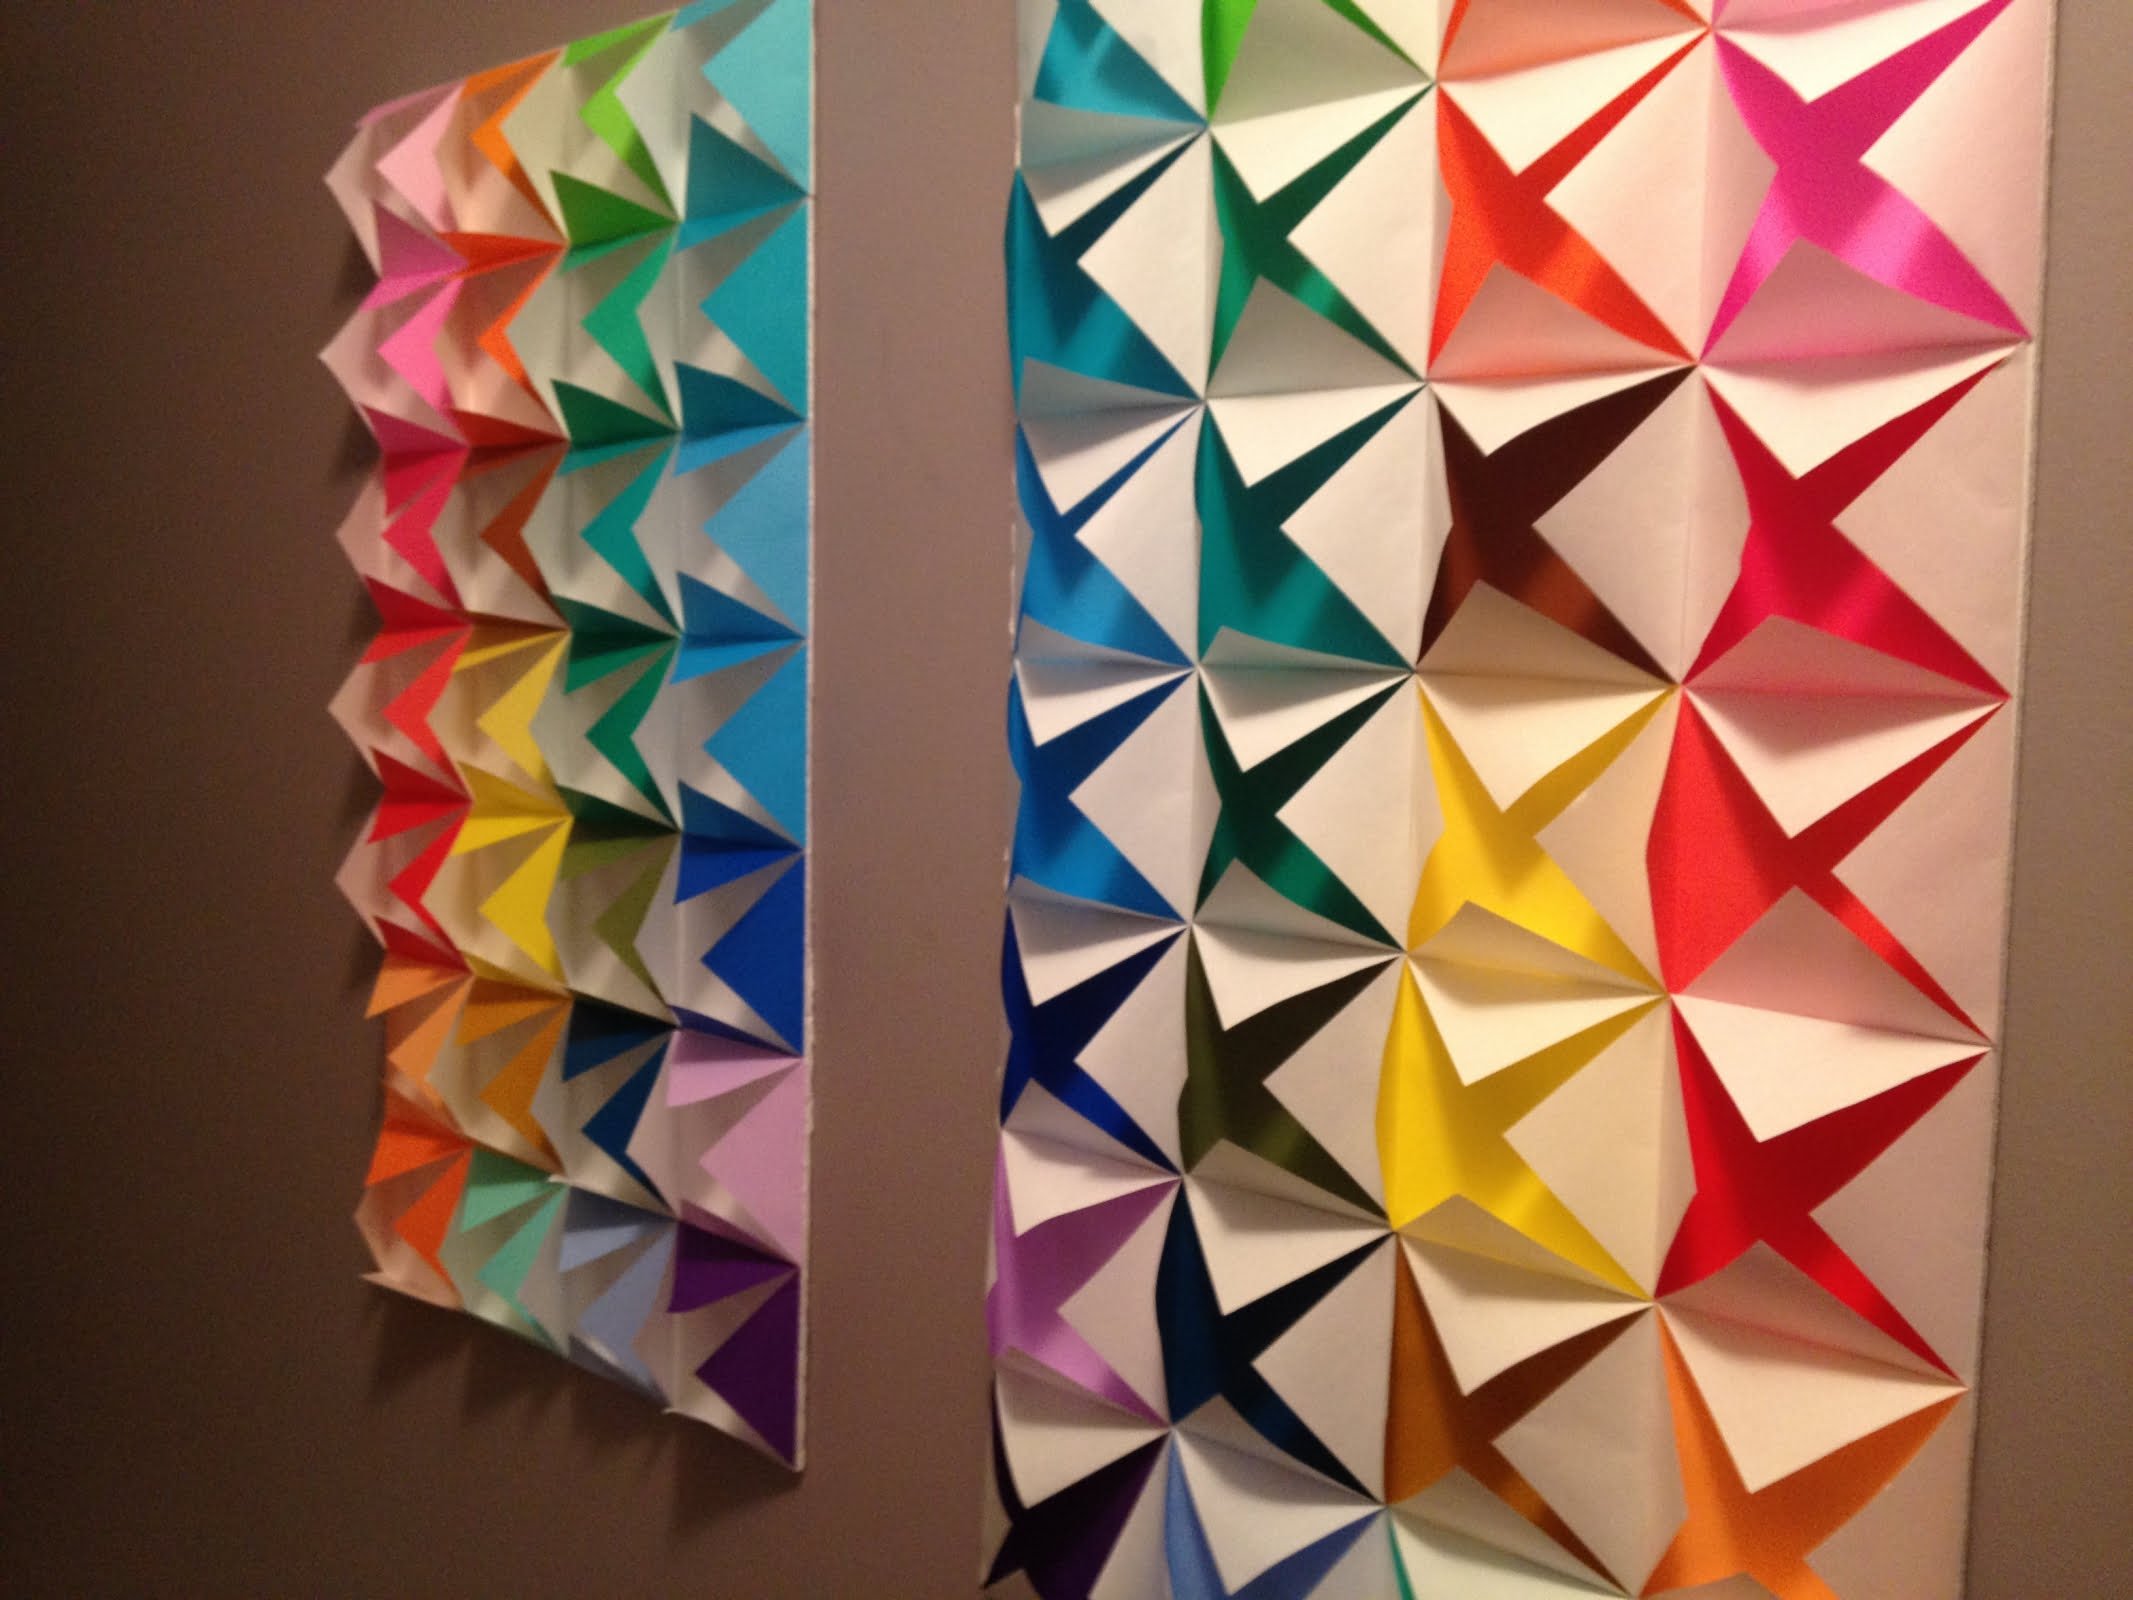 32 Populer Dekorasi Kamar Tidur Dari Origami Paling Populer di Dunia